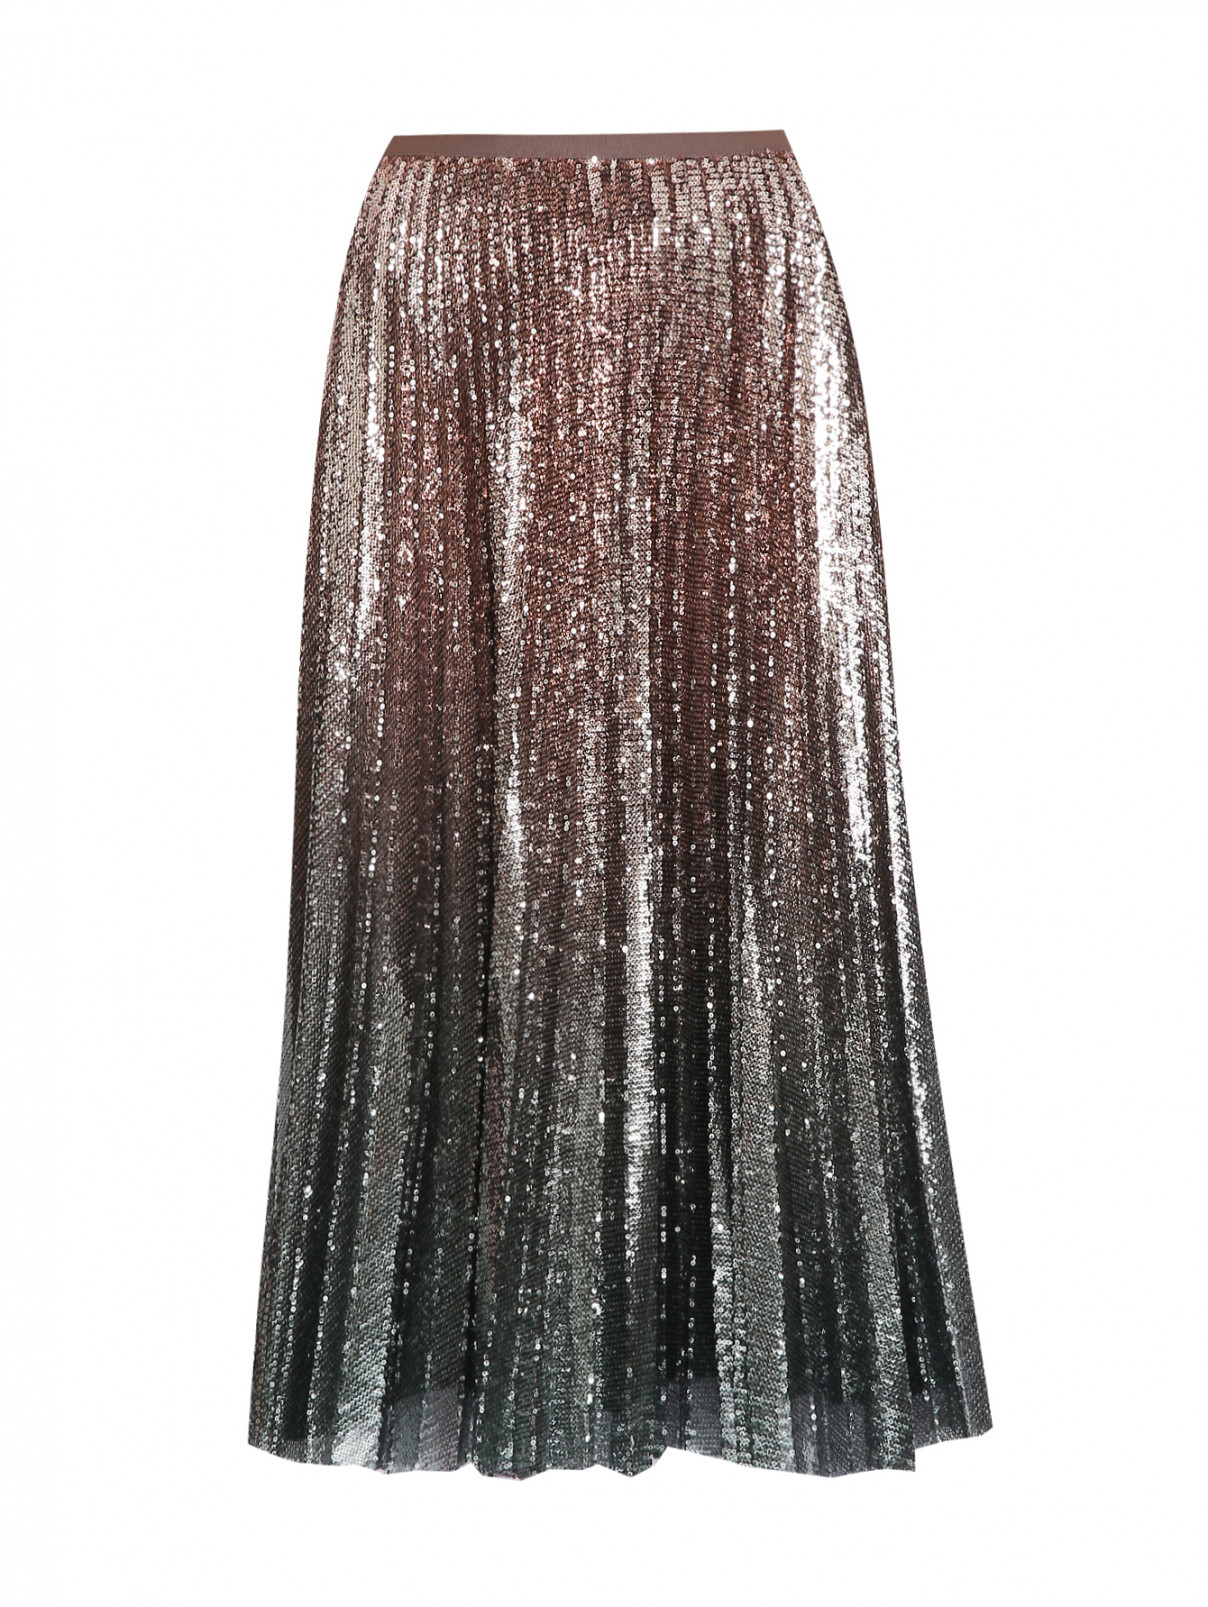 Плиссированная юбка на резинке в паетках Max Mara  –  Общий вид  – Цвет:  Золотой